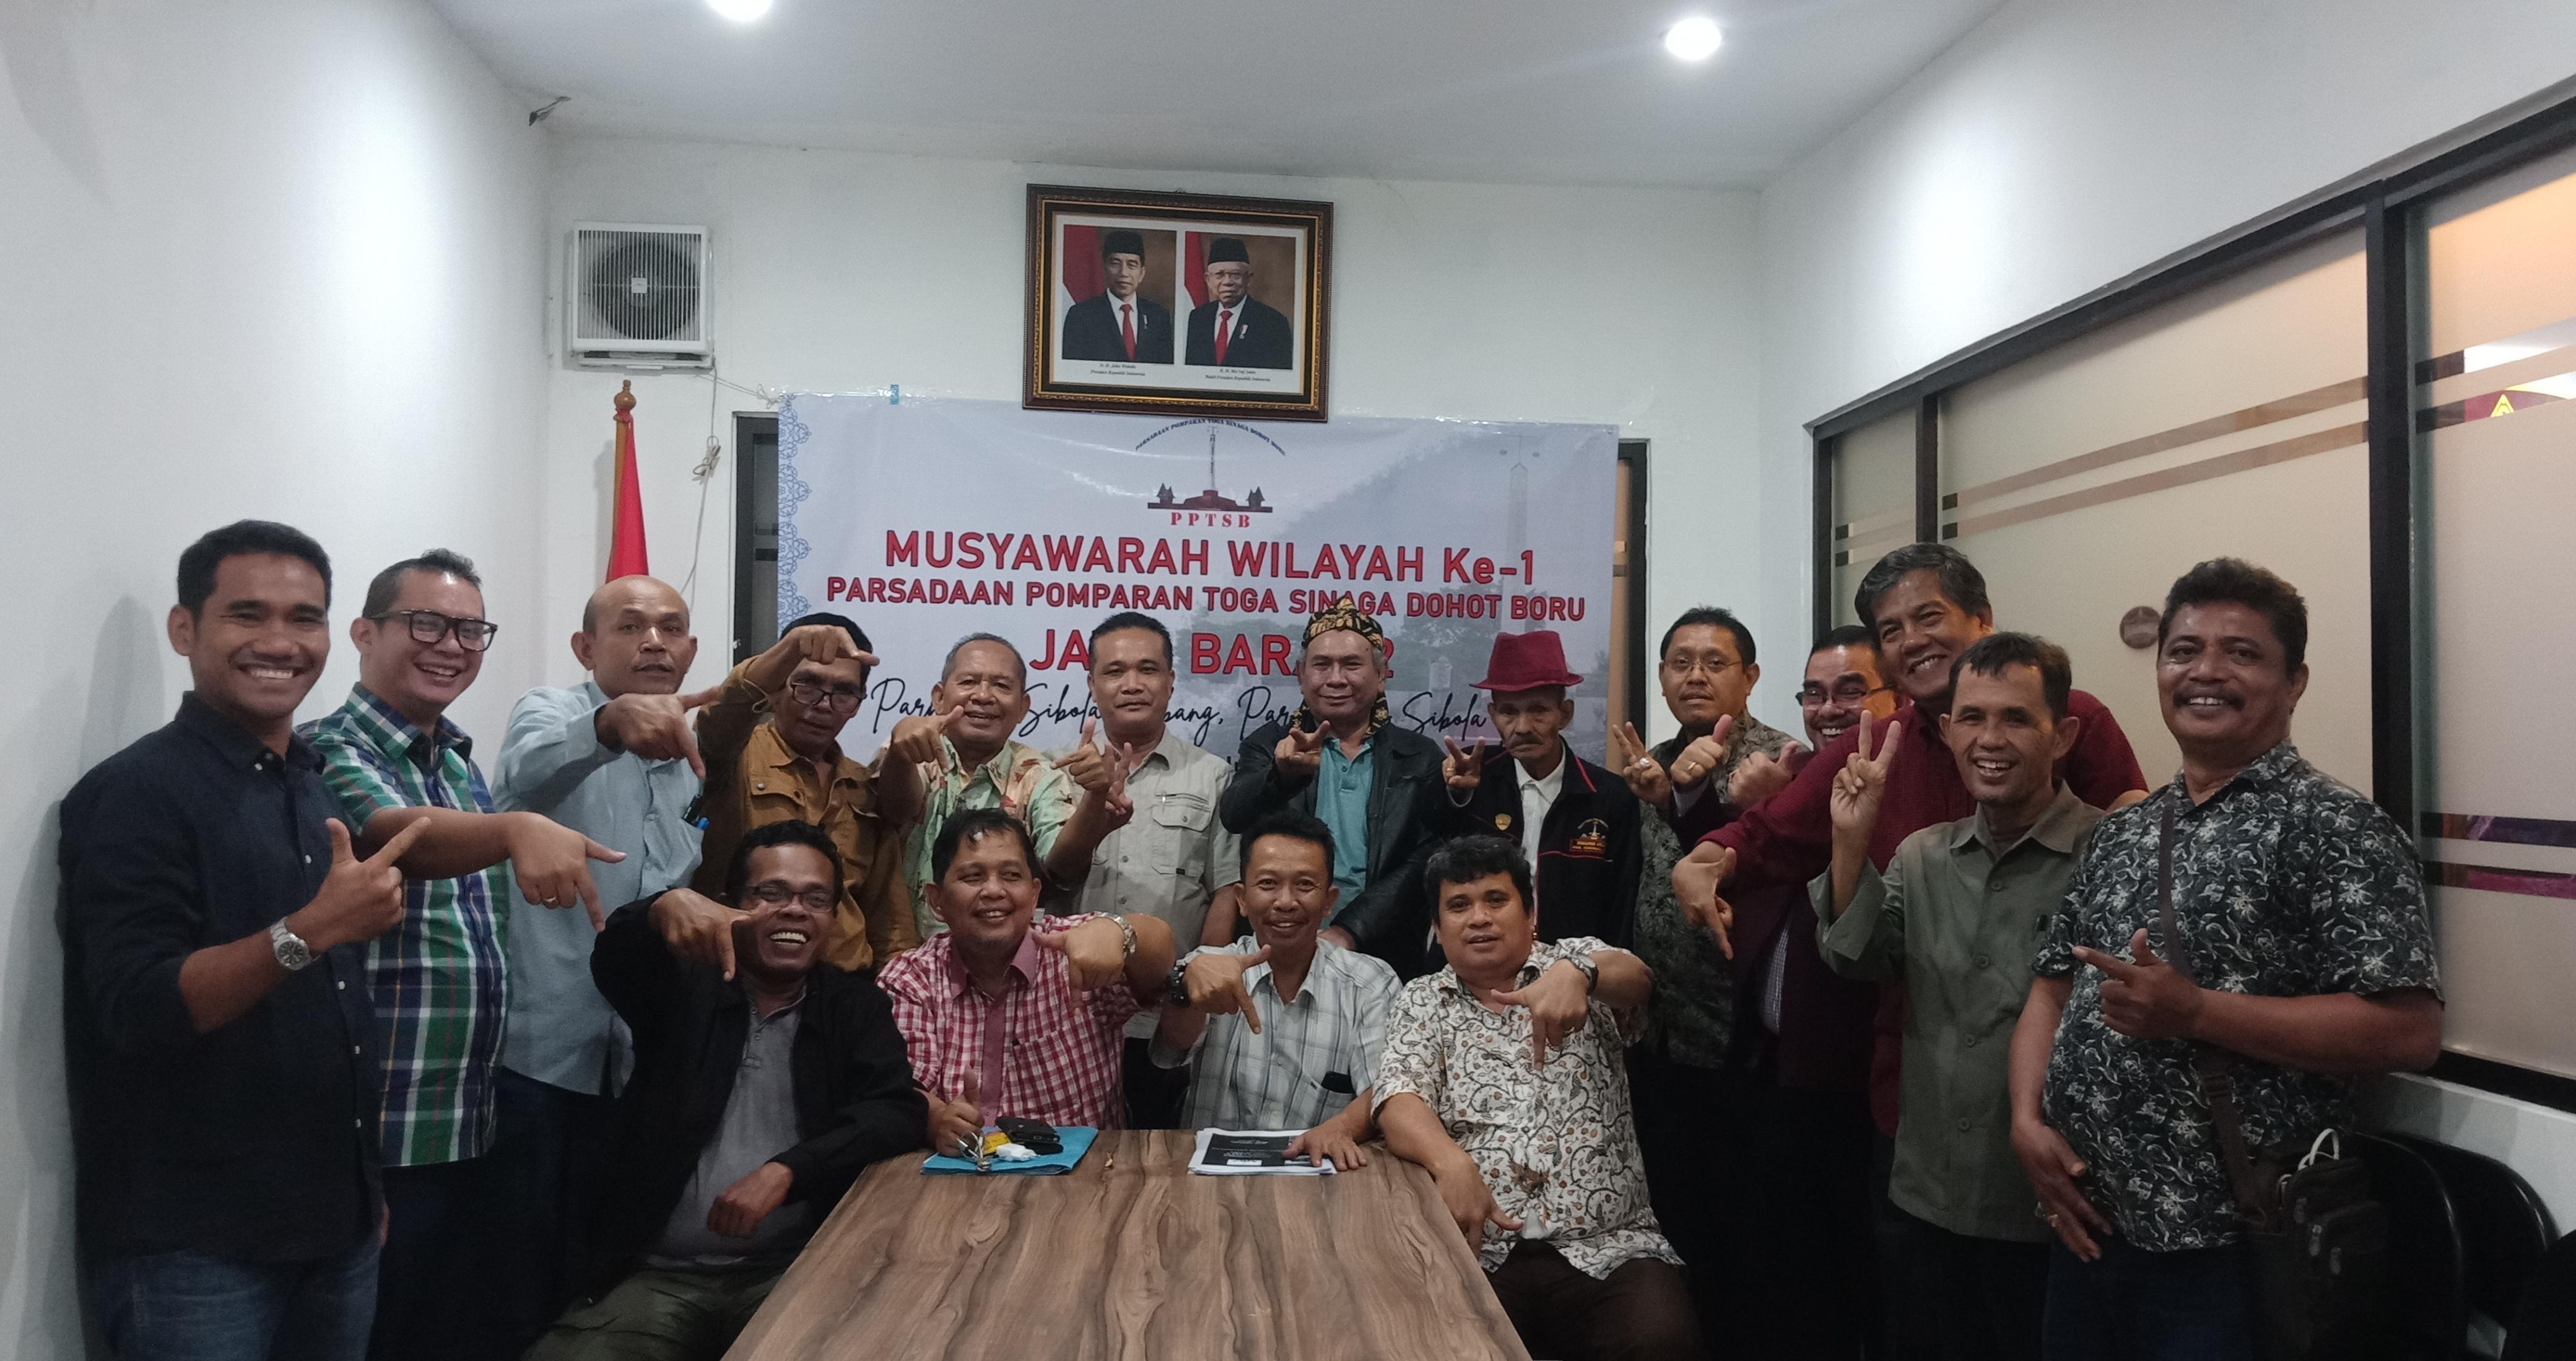 PPTSB Wilayah Jawa Barat 2 Resmi Berdiri, Dipimpin Kasmar Sinaga